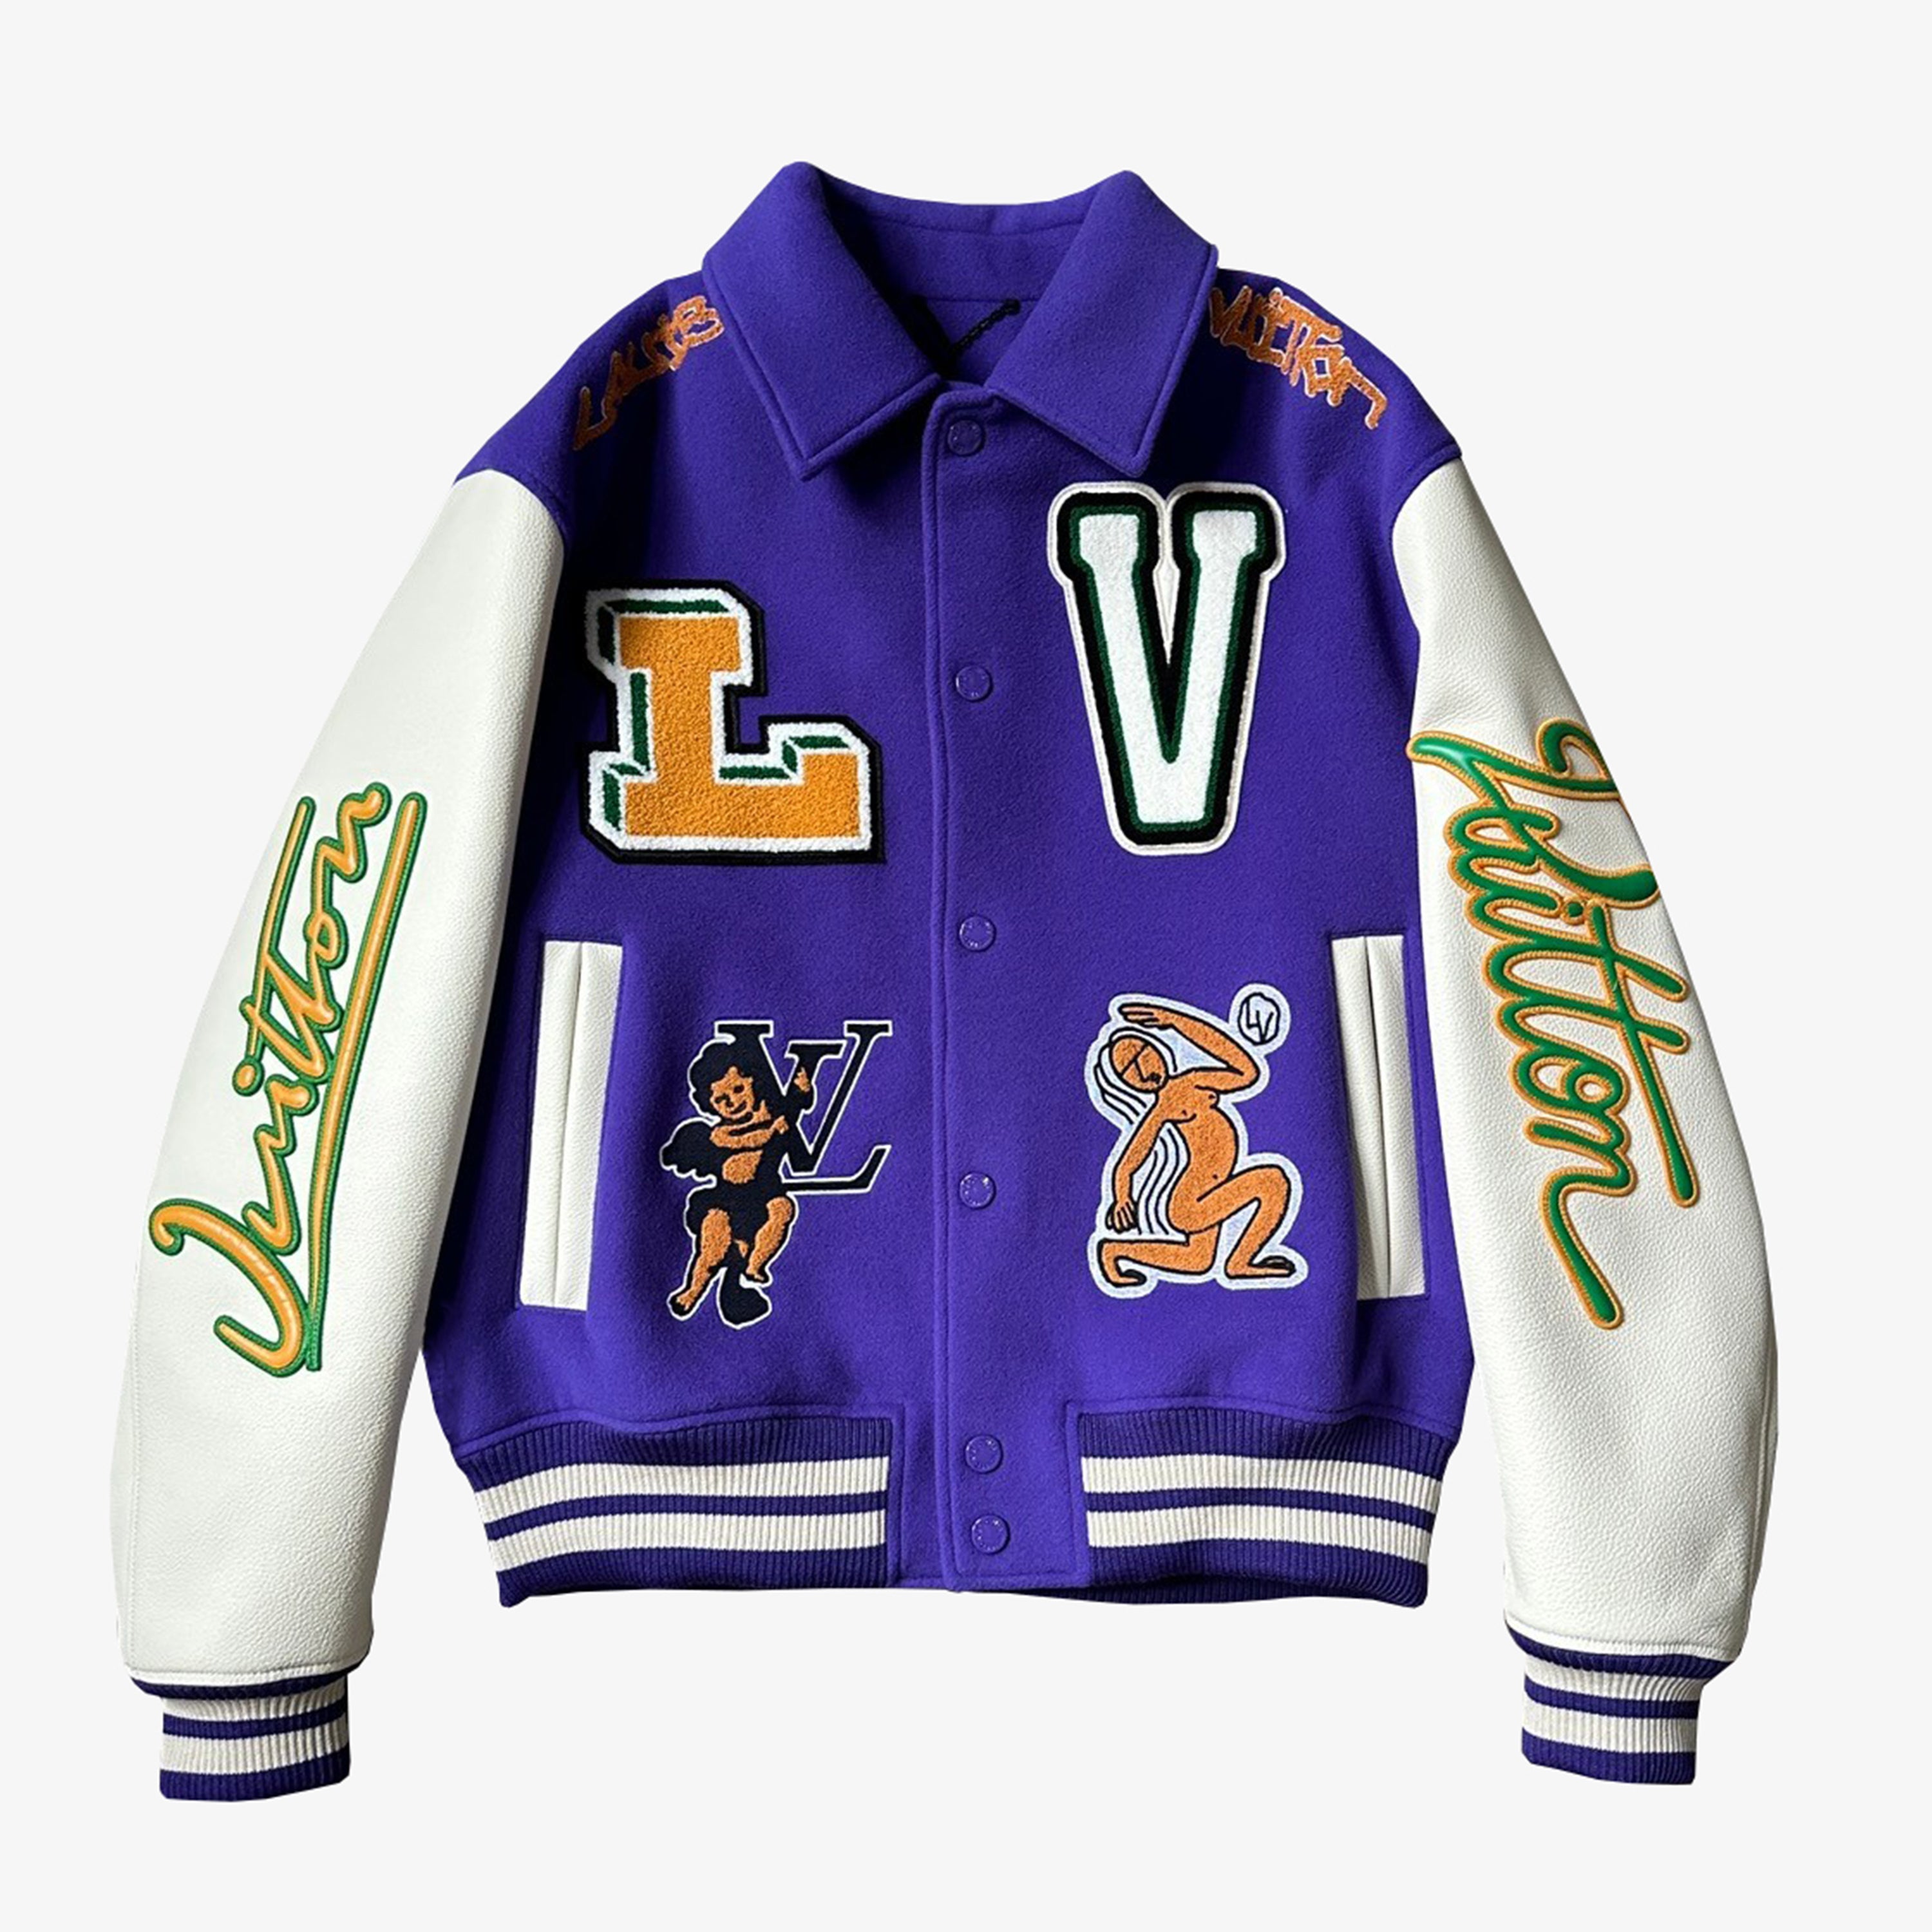 Louis Vuitton Patch Varsity Jacket